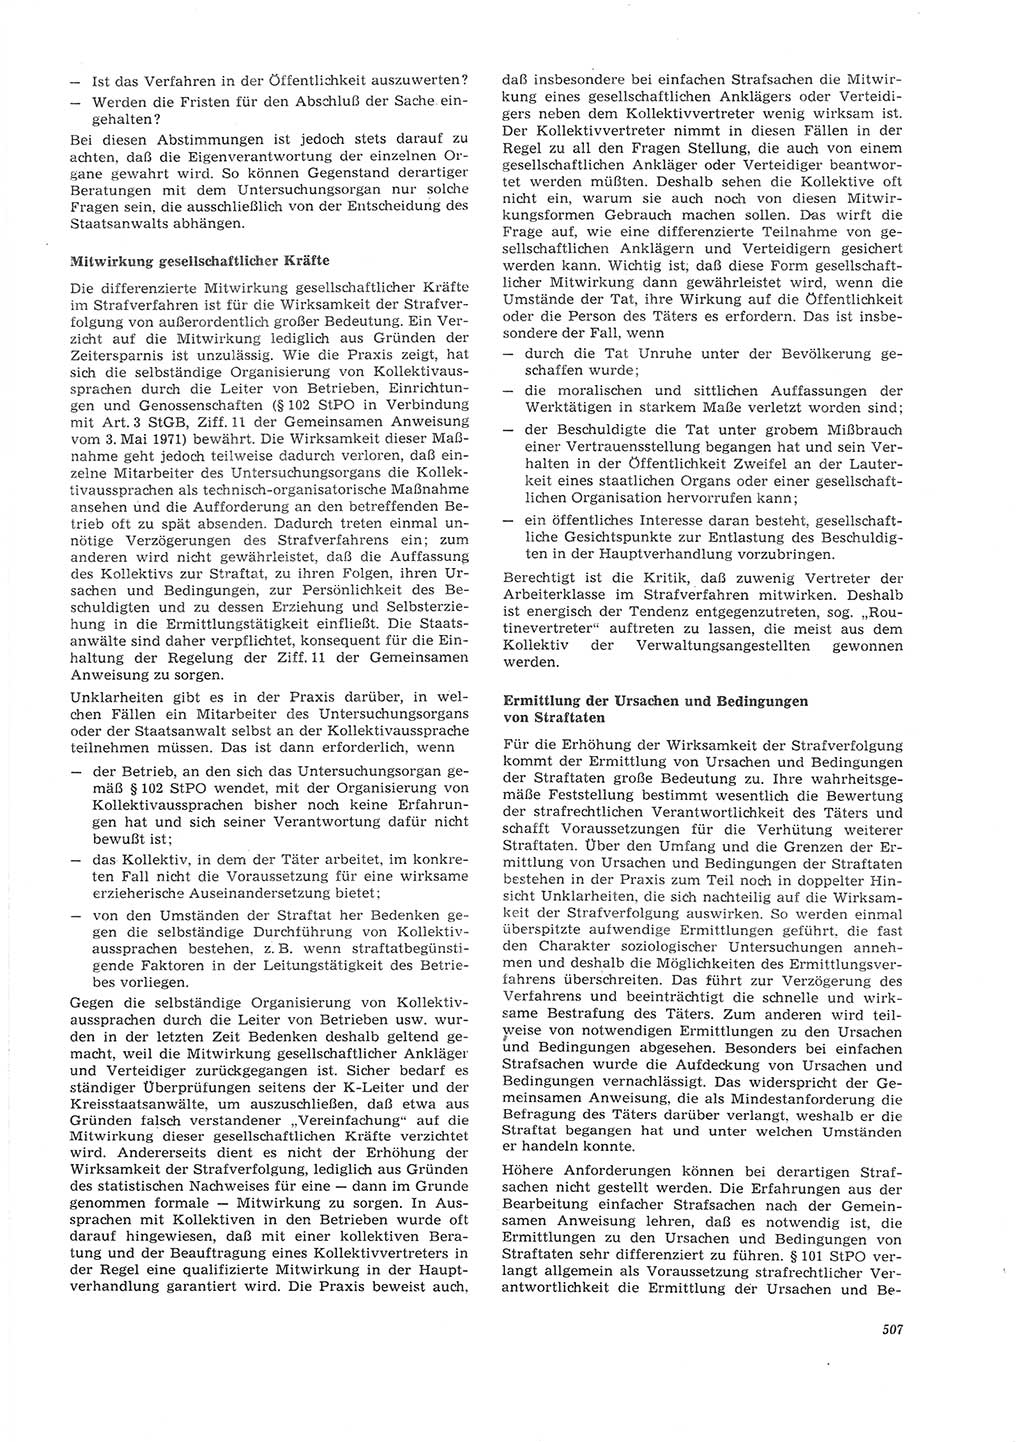 Neue Justiz (NJ), Zeitschrift für Recht und Rechtswissenschaft [Deutsche Demokratische Republik (DDR)], 26. Jahrgang 1972, Seite 507 (NJ DDR 1972, S. 507)